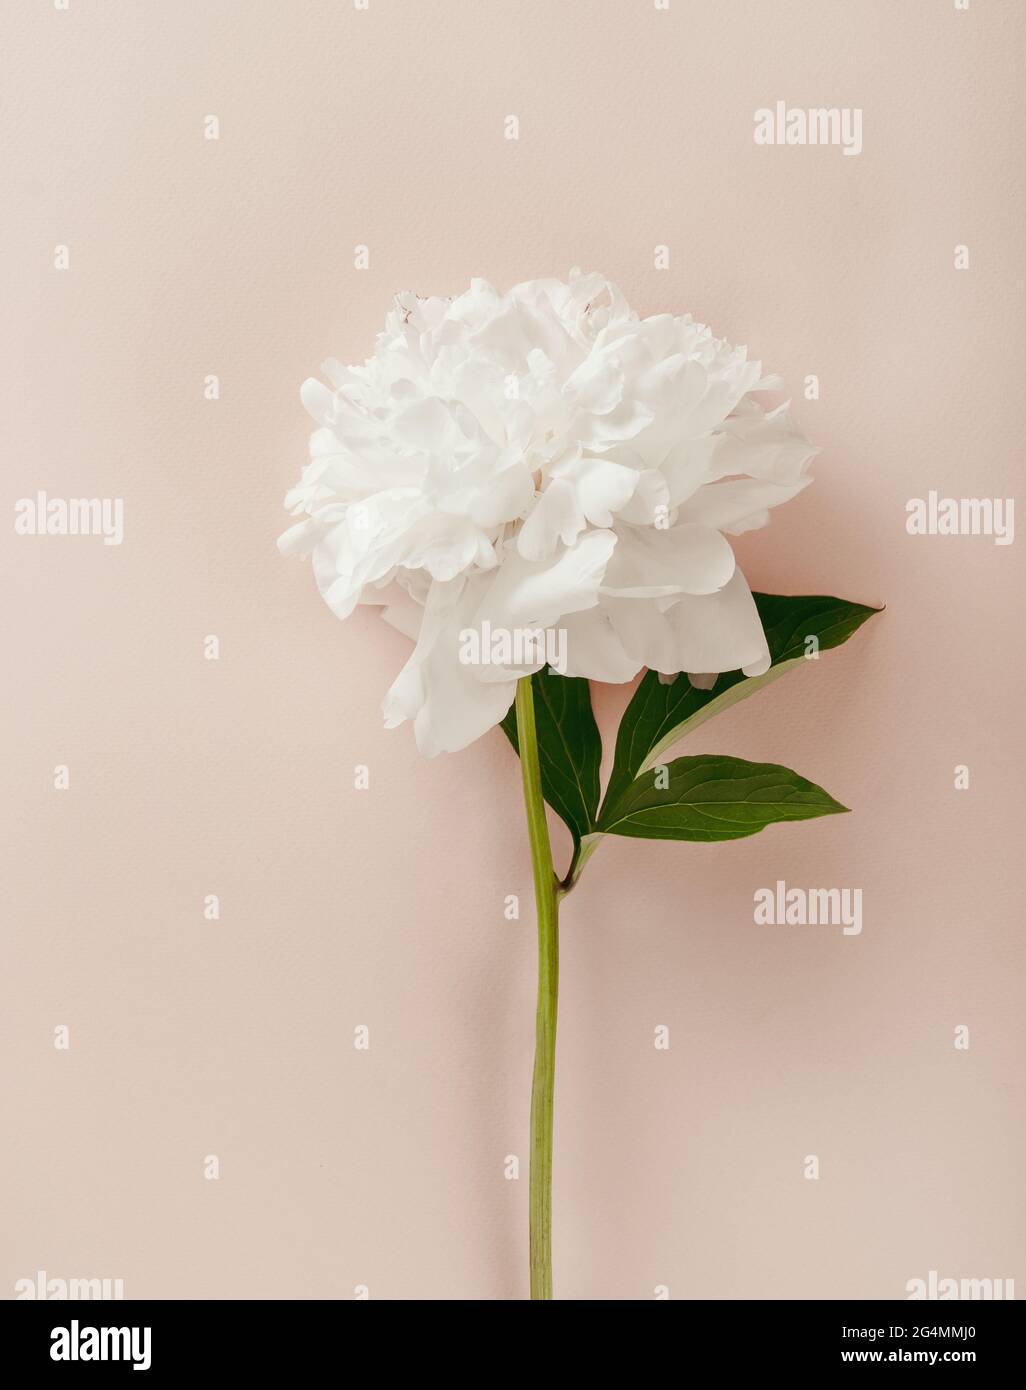 Wunderschöne weiße Pfingstrosen-Blüten auf pastellrosa Hintergrund. Romantischer Hintergrund mit weißem Pfingstrosen-Bouquet. Flach liegend. Stockfoto